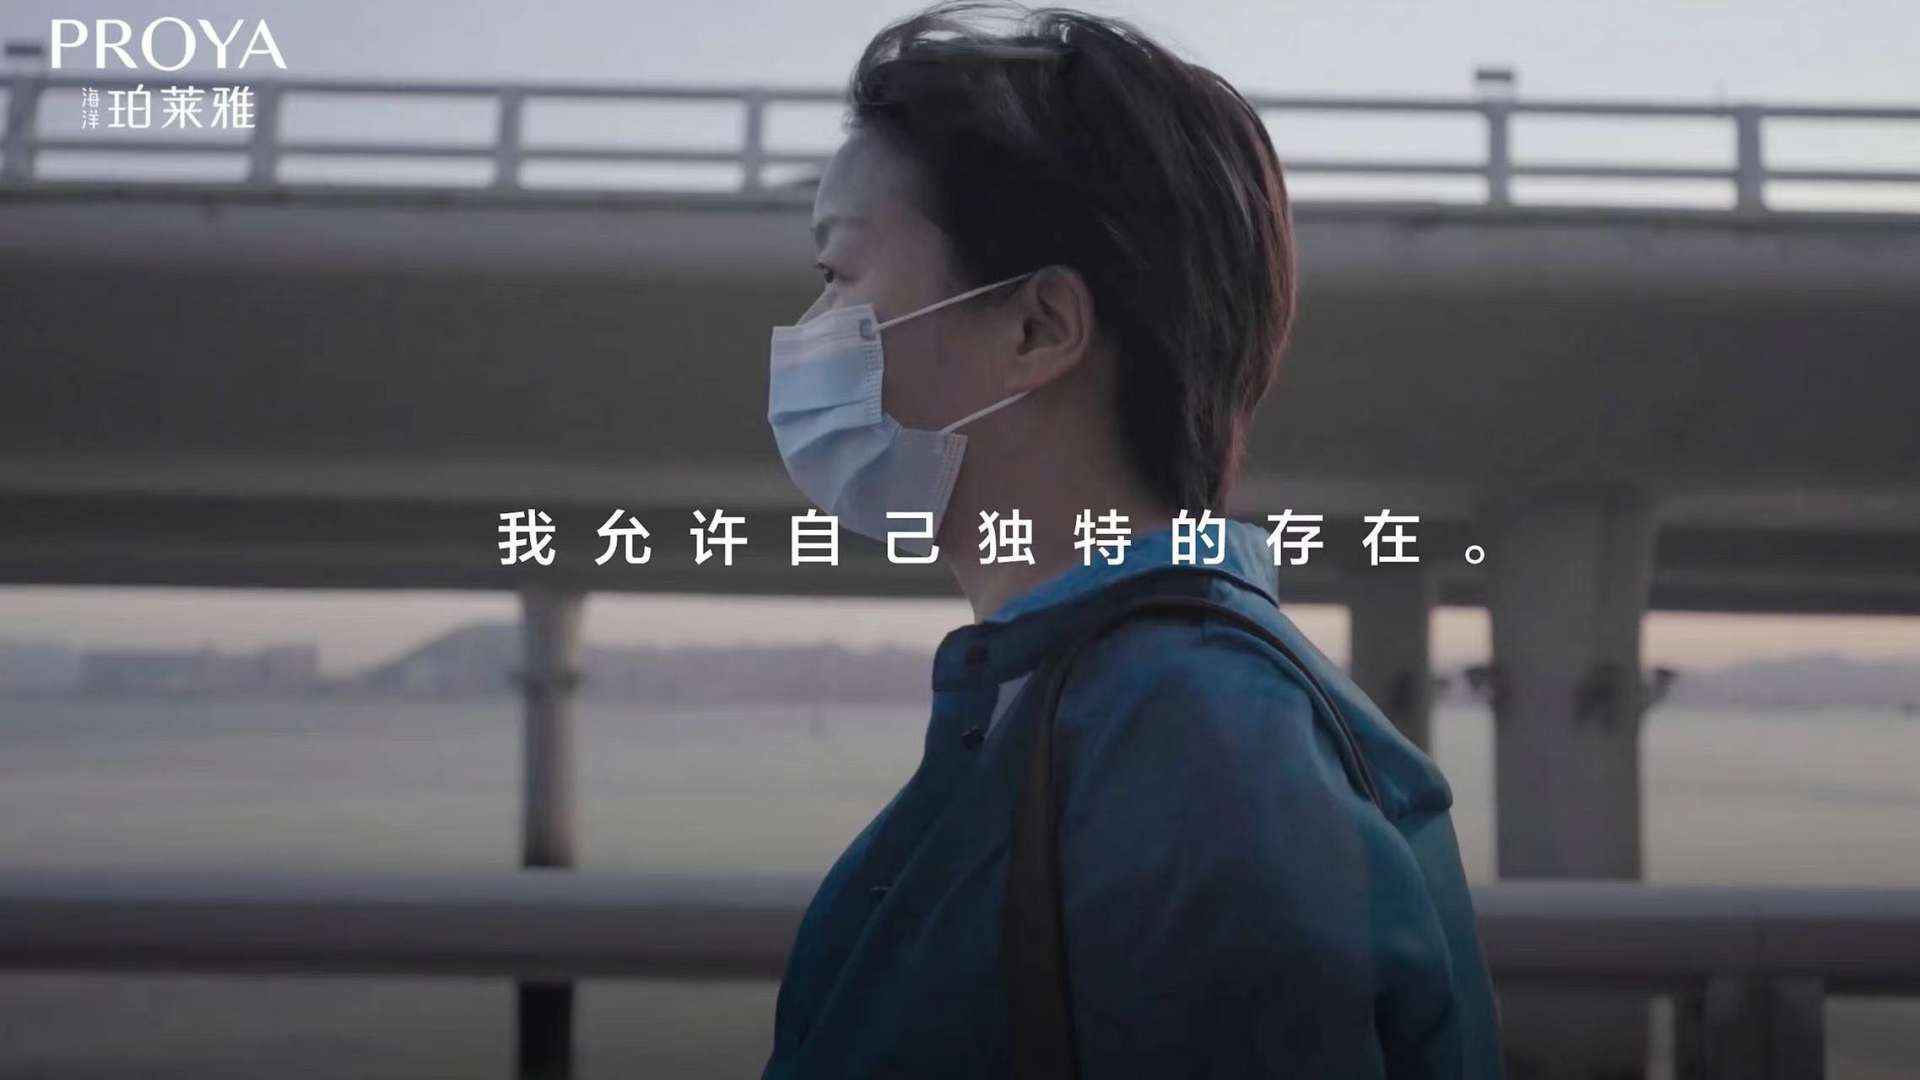 珀莱雅「回声计划」纪录片:张春谈女性抑郁